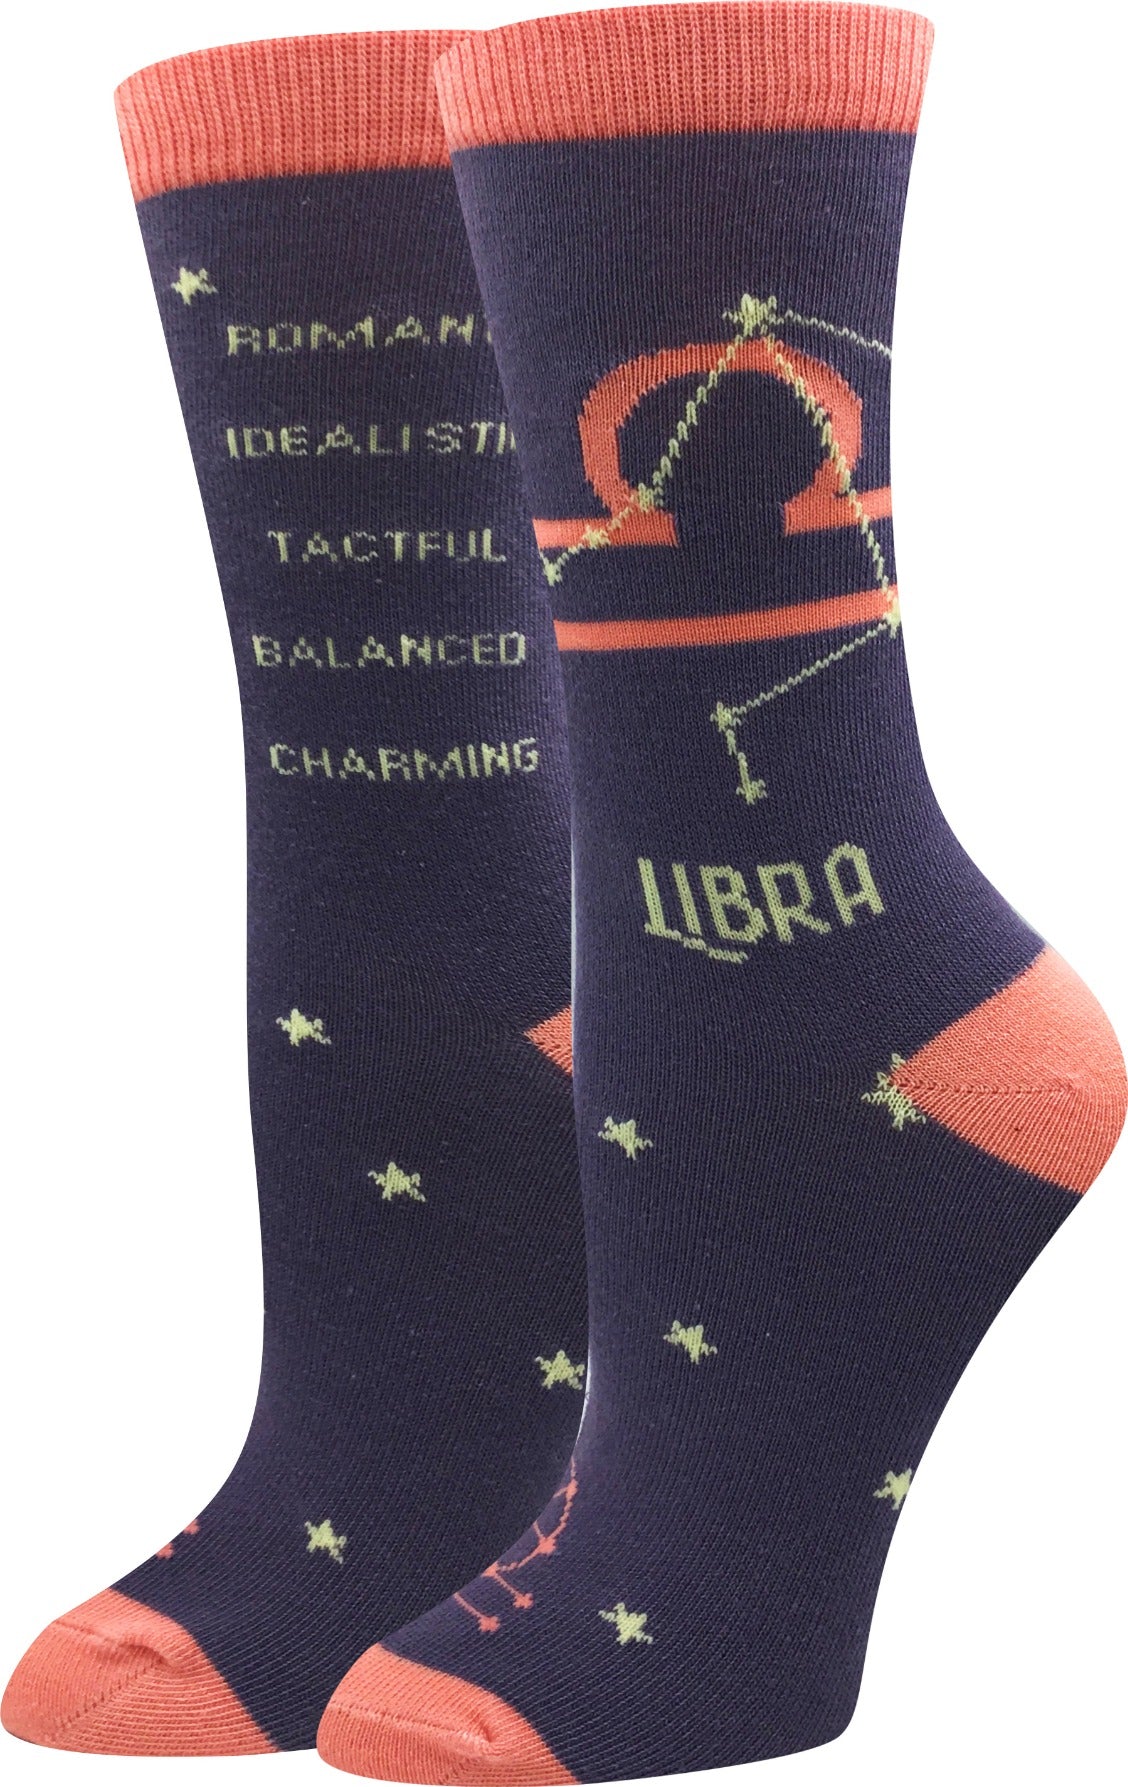 Libra Socks